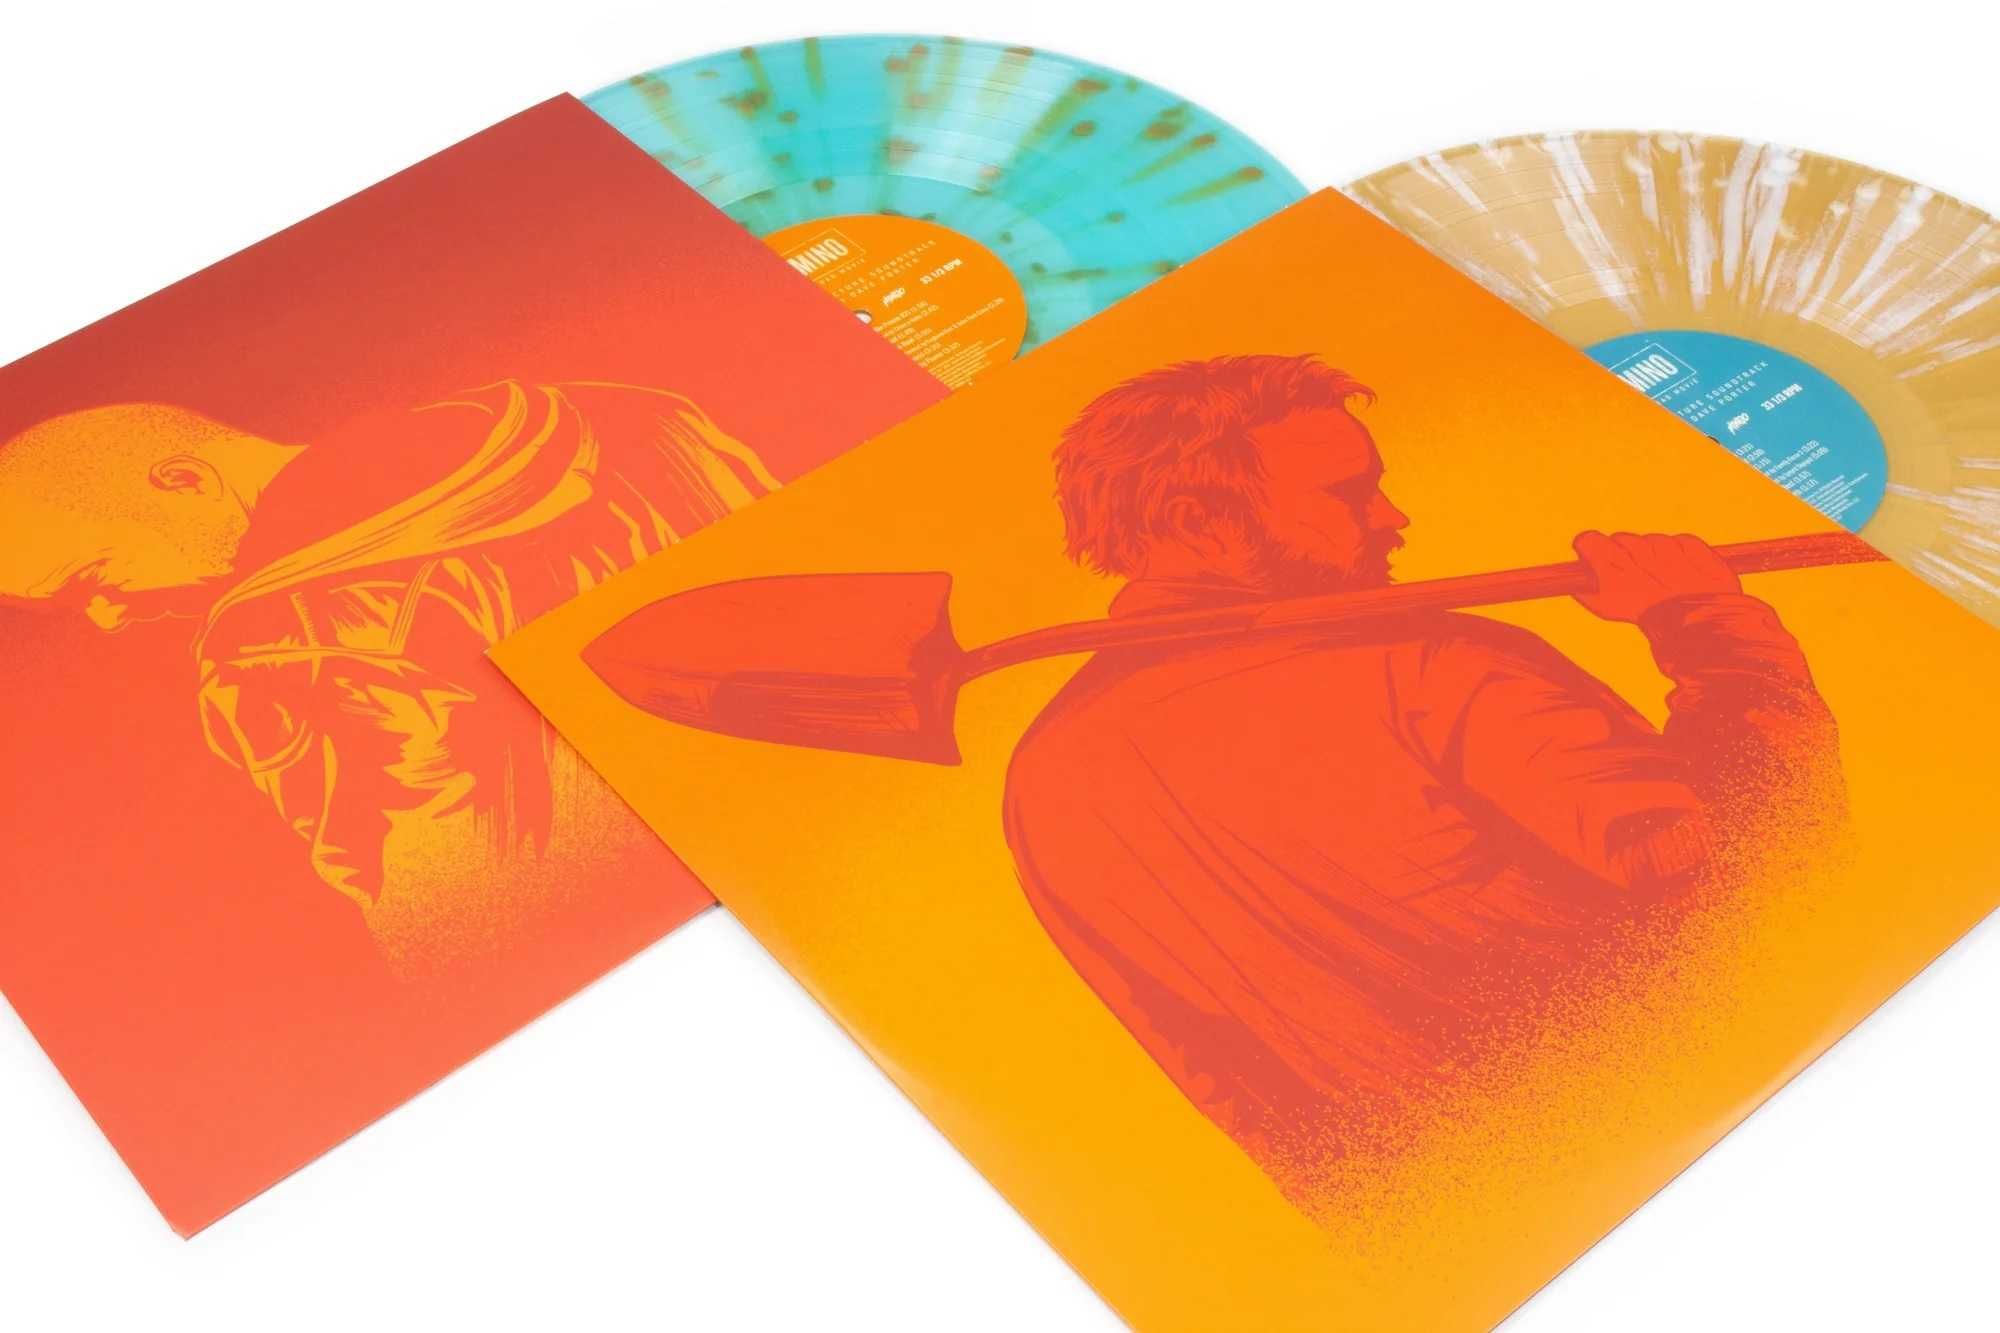 Winyl: El Camino A Breaking Bad Movie - Original Soundtrack Vinyl 2XLP